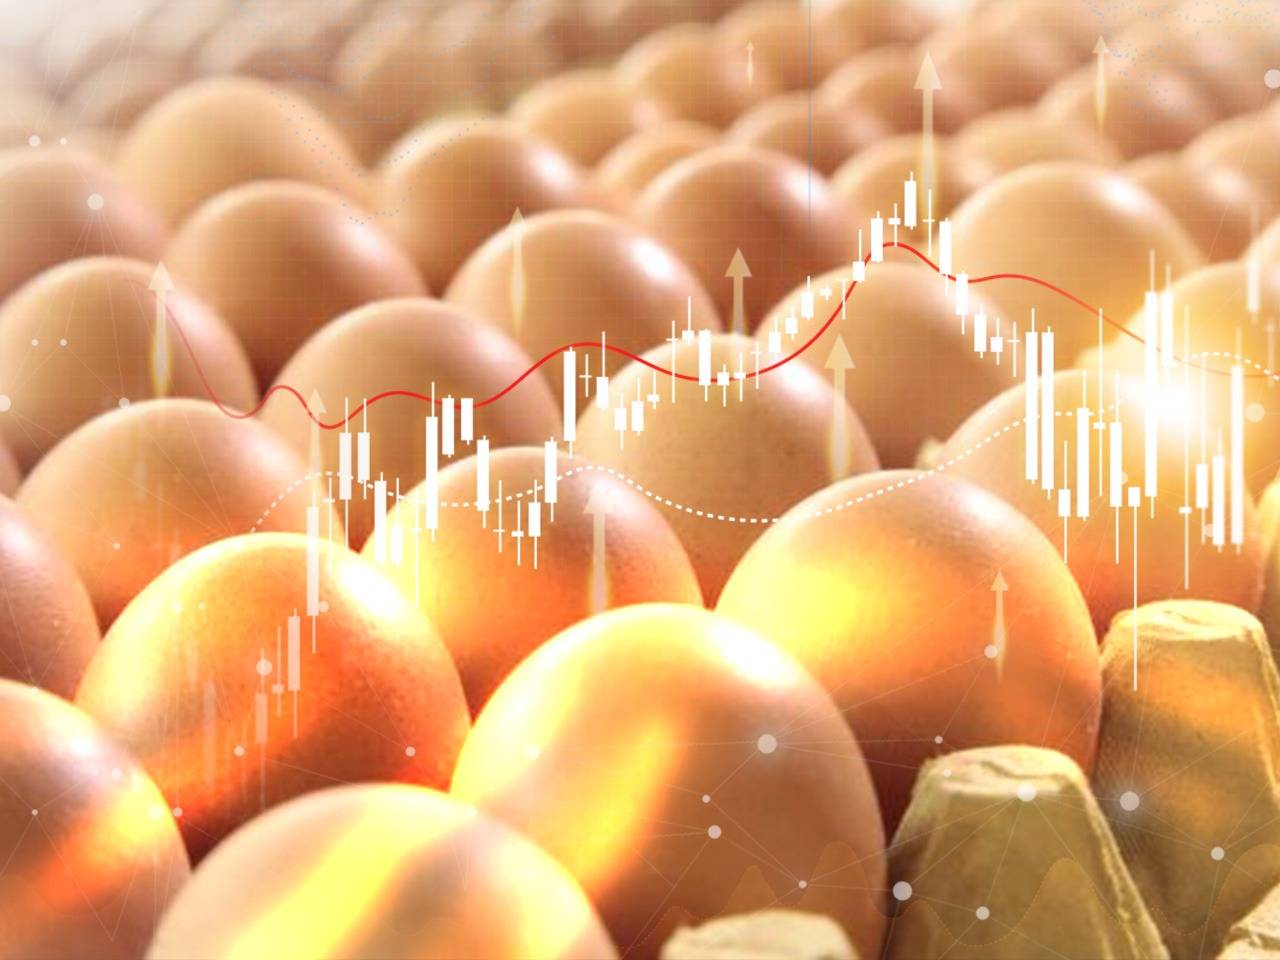 上半年蛋鸡补栏增加，供应面或利空下半年鸡蛋价格